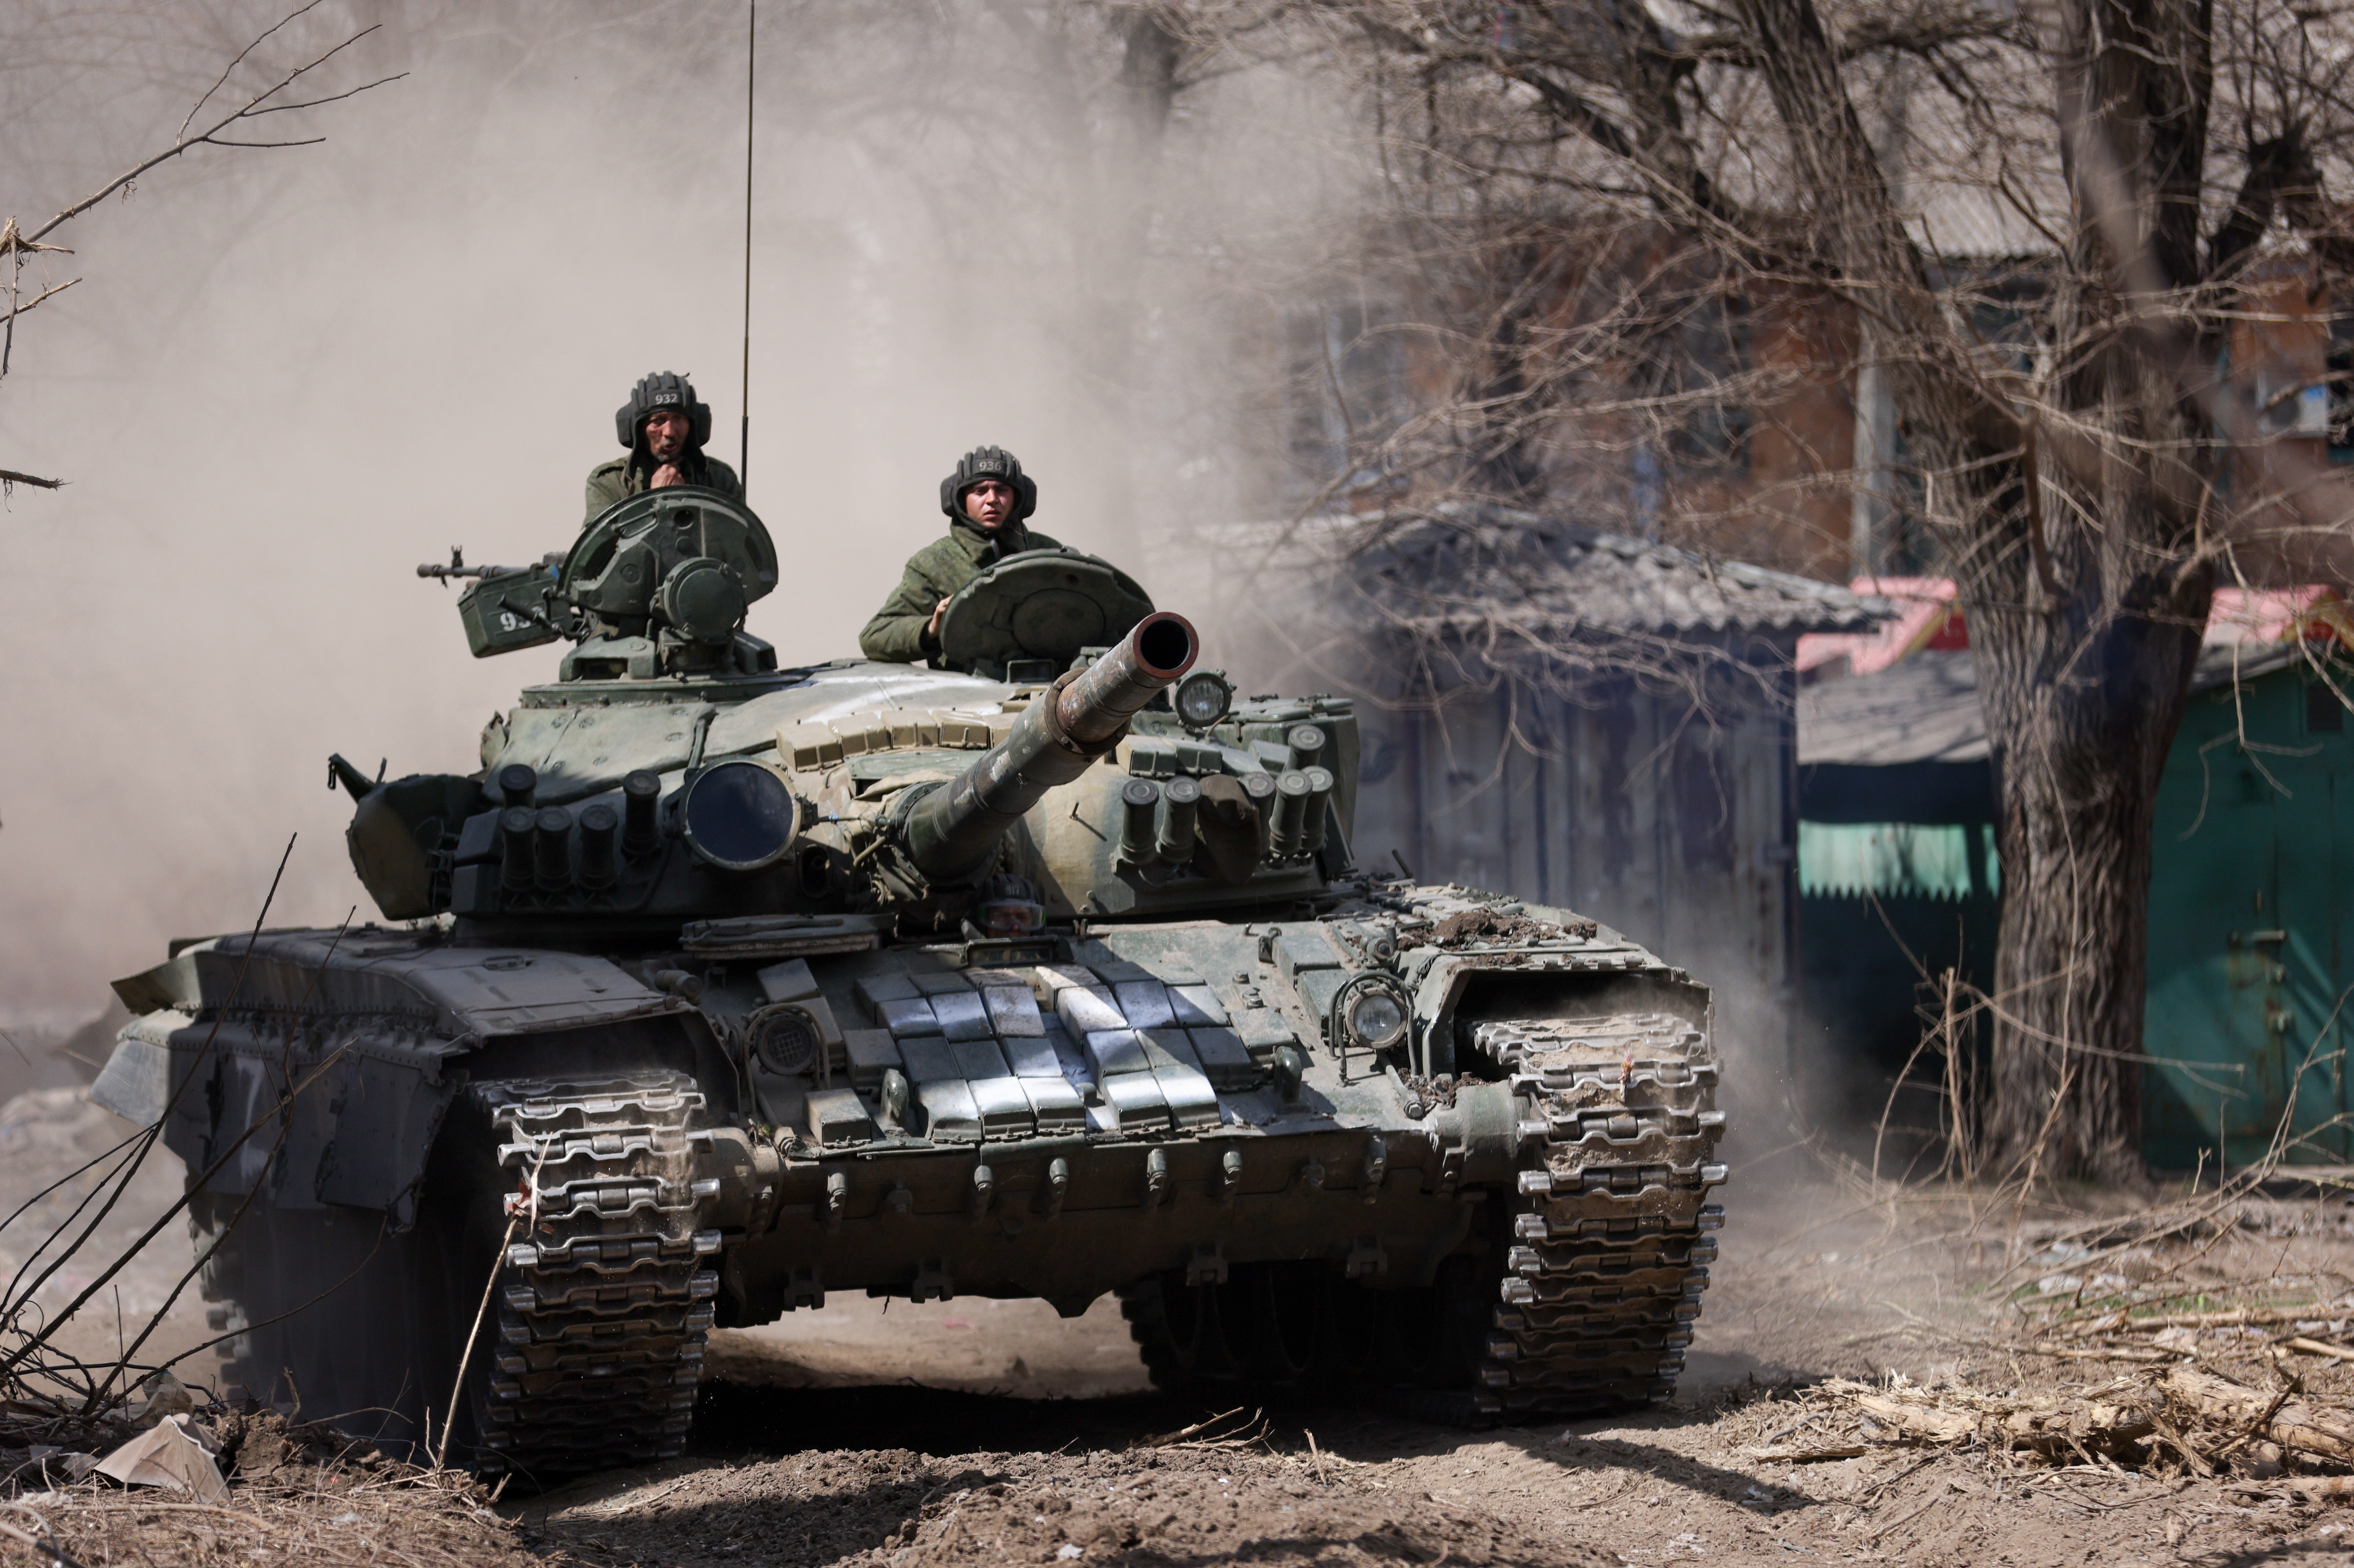 Обстановка военной операции. Т-64бв ВСУ. Т 80 БВ чистилище. Наши войска. Российская армия в бою.